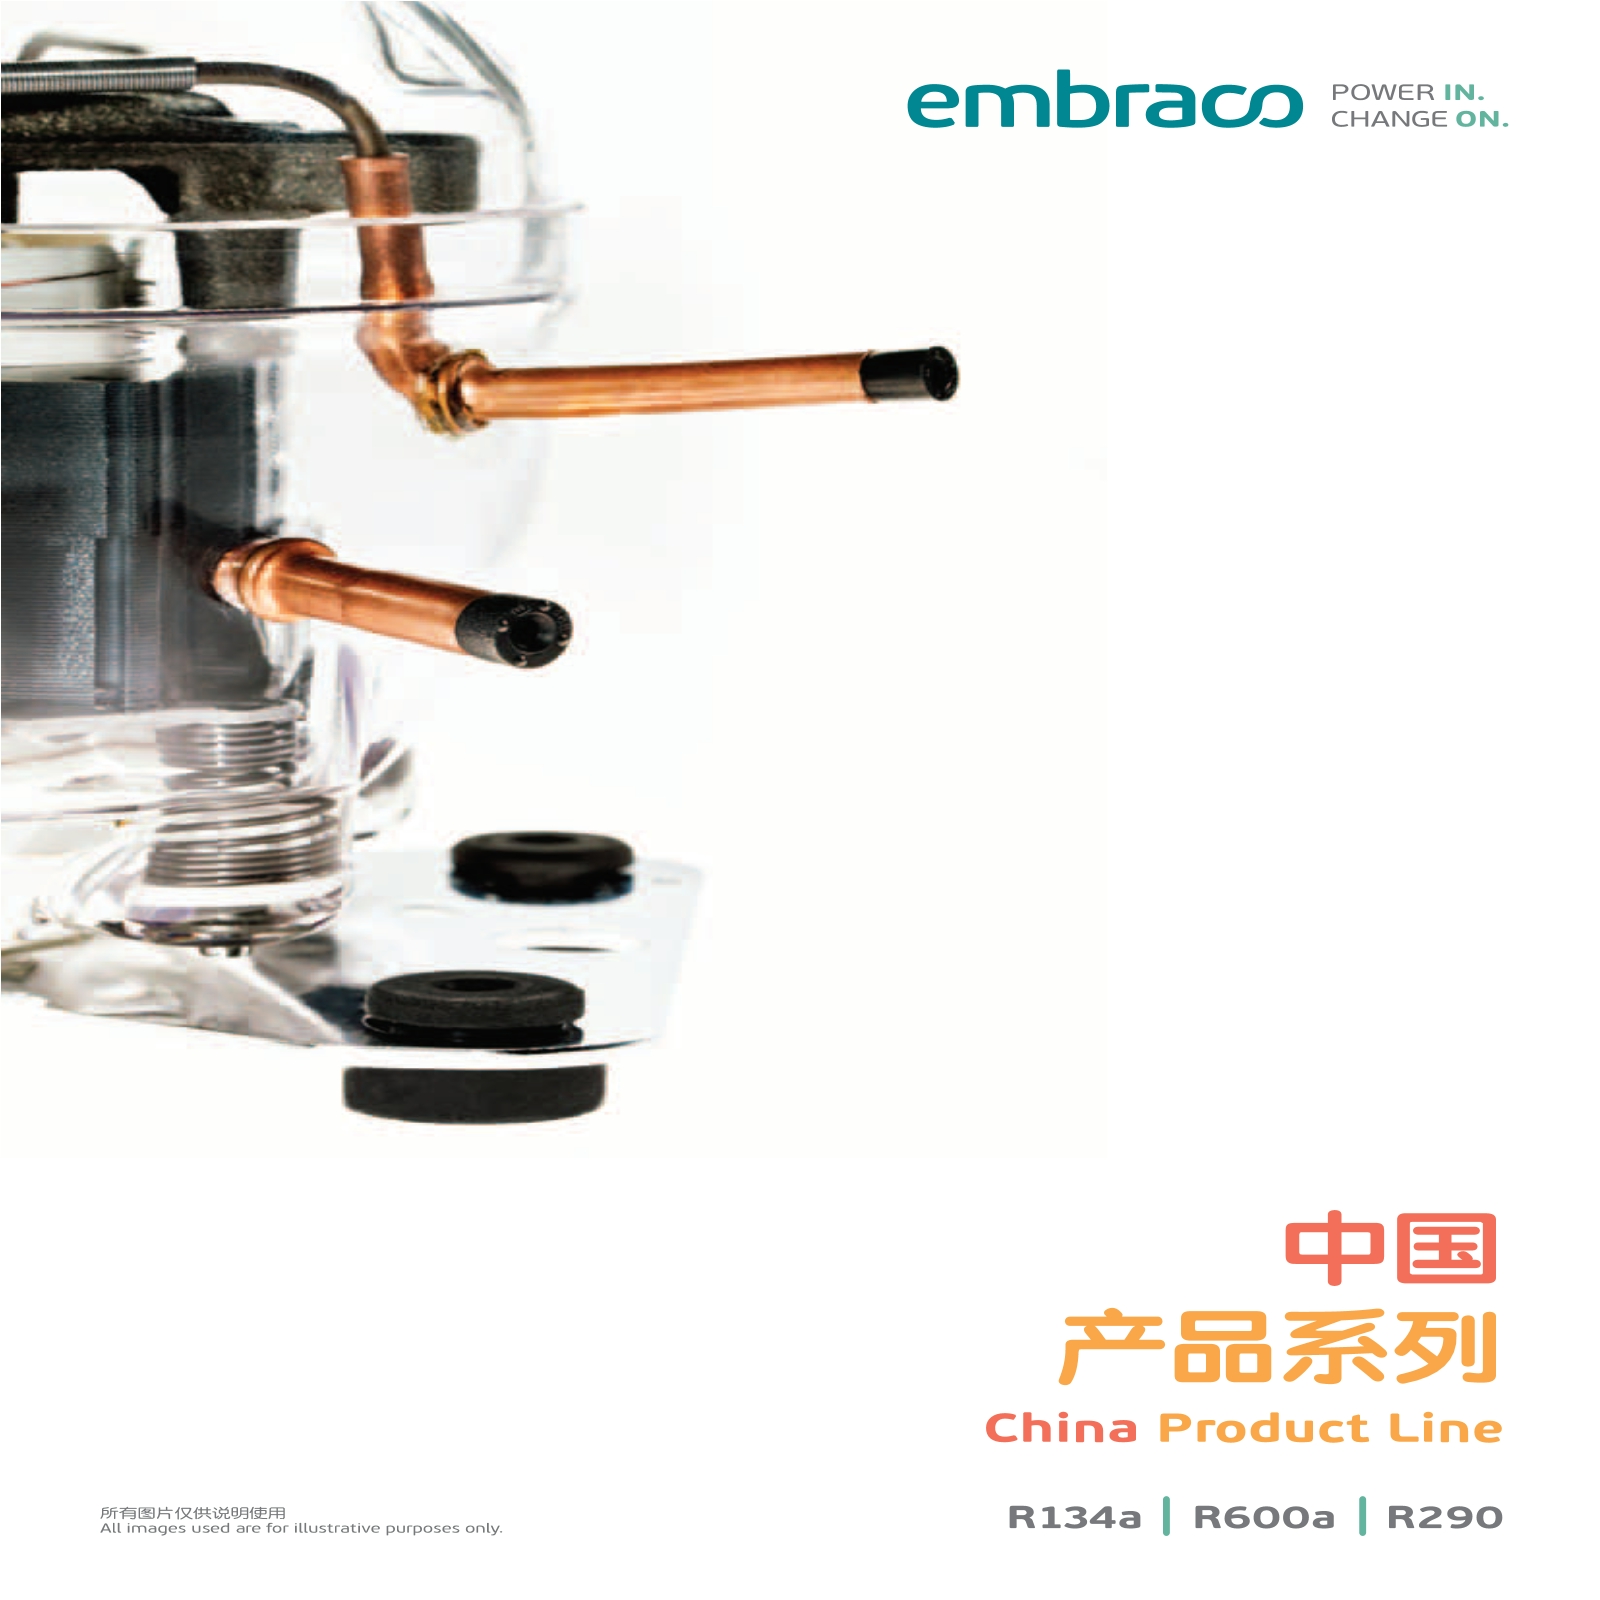 恩布拉科雪花压缩机-中国产品系列